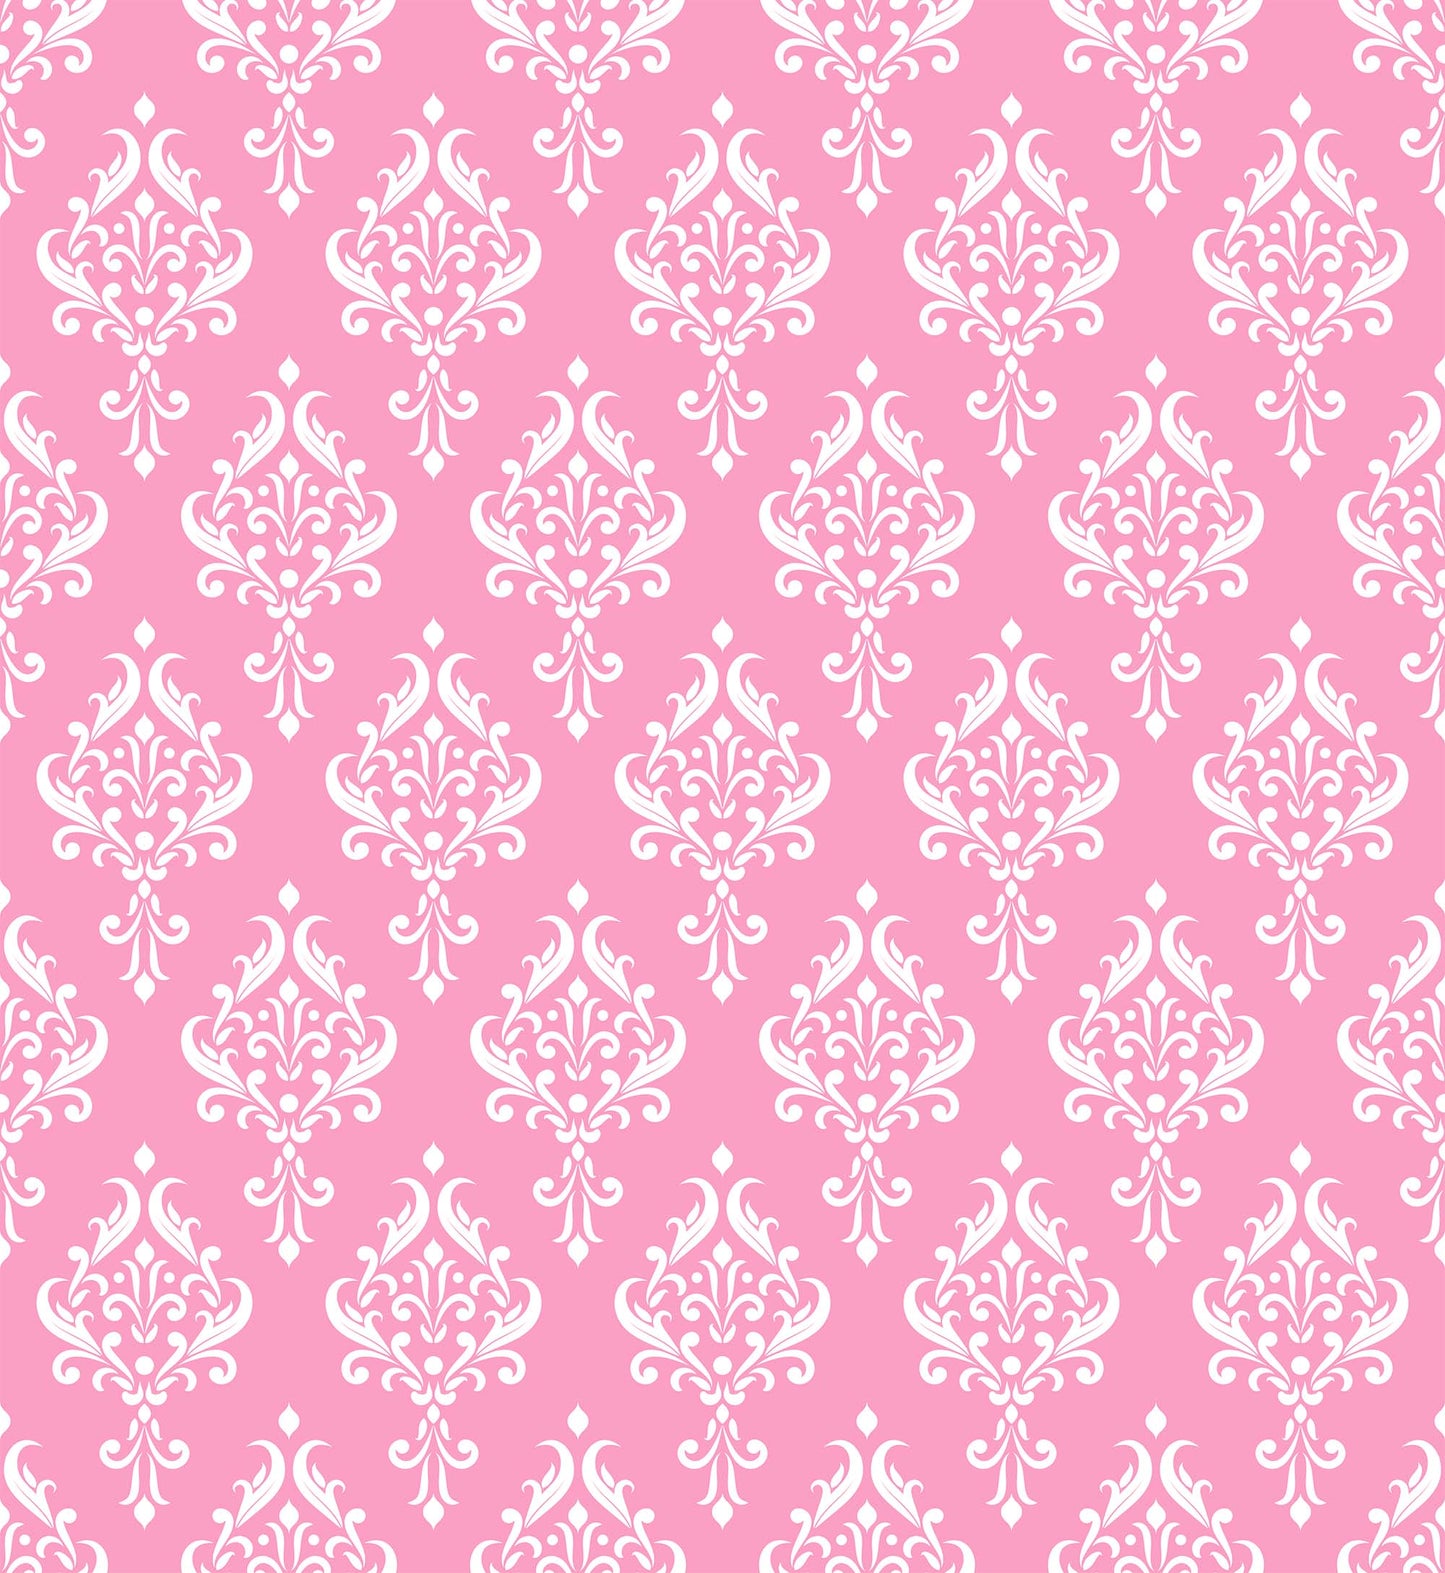 Pink Wallpaper PI-5